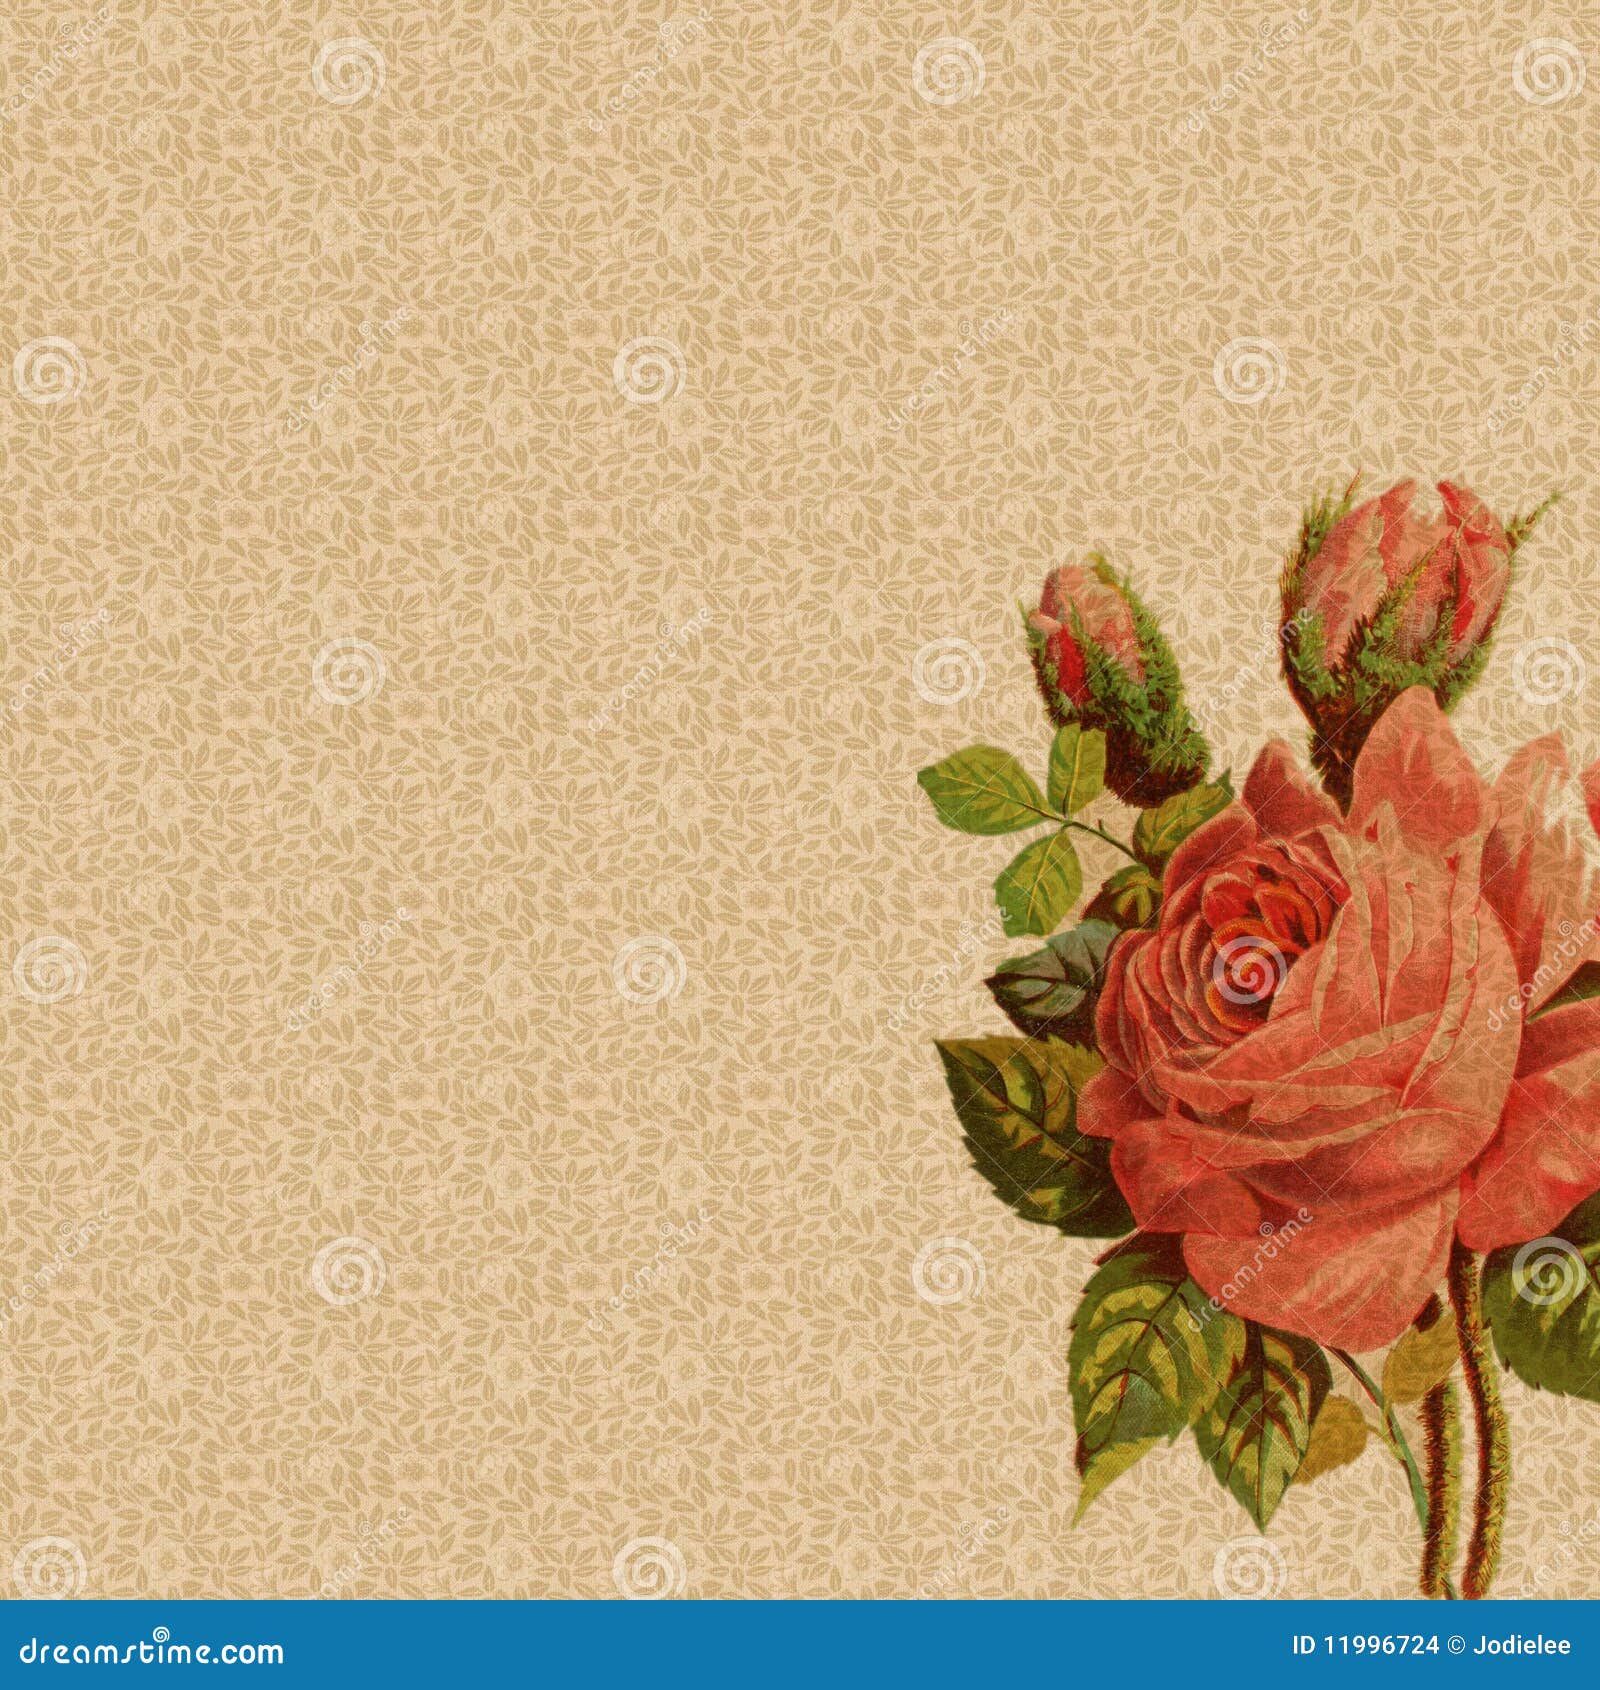 Hình nền hoa hồng cổ điển với họa tiết hoa tuyệt đẹp và sắc xanh đẹp mắt, một sự lựa chọn tuyệt vời cho bất kỳ ai yêu thích sự thanh lịch và tỉ mỉ. Với những chi tiết hoa hồng đầy quyến rũ, hình nền này sẽ mang lại cho bạn cảm giác an yên và năng động khi sử dụng.